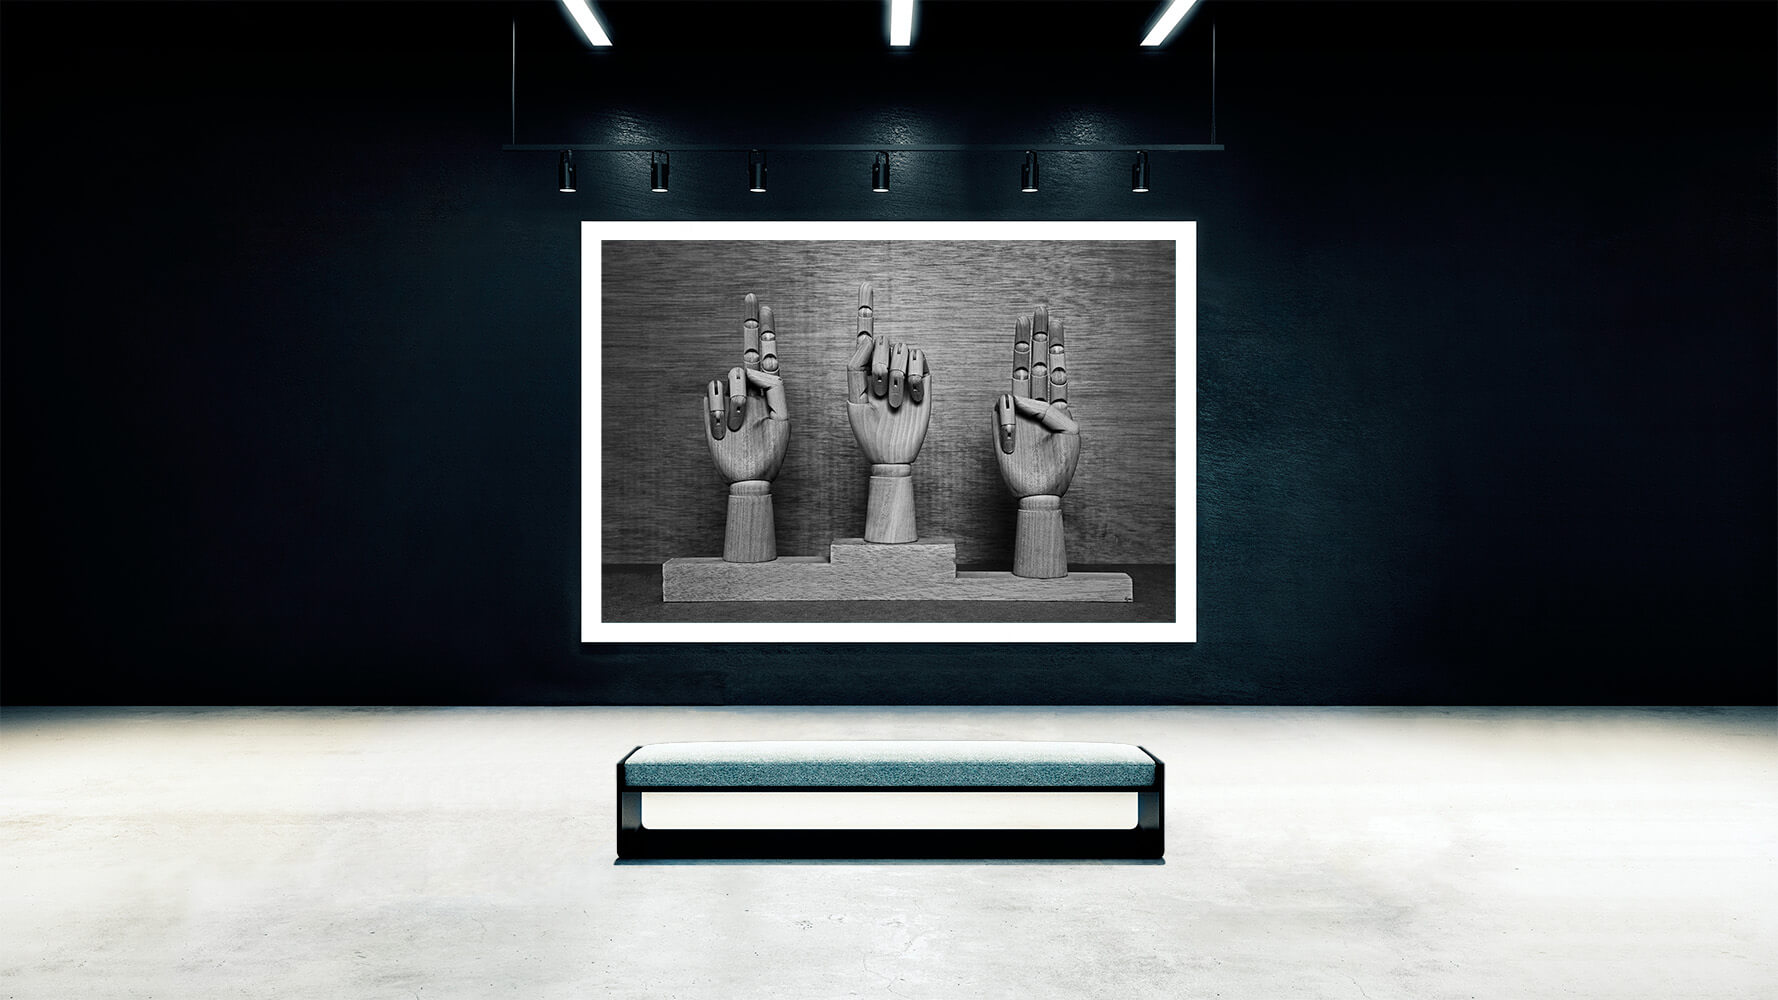 Sintora-Alter-ego-Viktor-van-der-lak-Podium-exhibition-talk-to-me-Horno-Online-Gallery-Artist-1778X1000